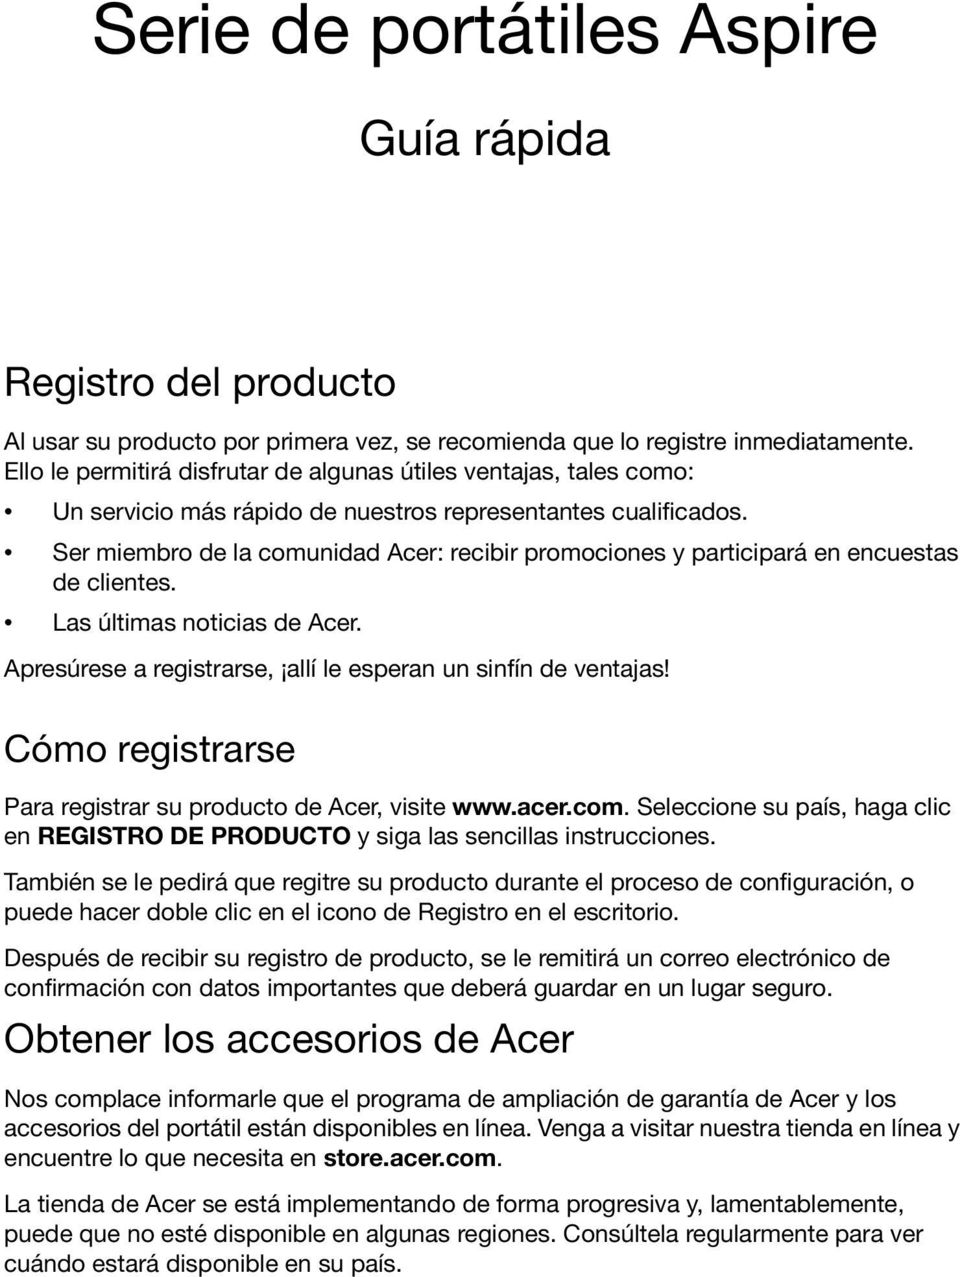 Ser miembro de la comunidad Acer: recibir promociones y participará en encuestas de clientes. Las últimas noticias de Acer. Apresúrese a registrarse, allí le esperan un sinfín de ventajas!